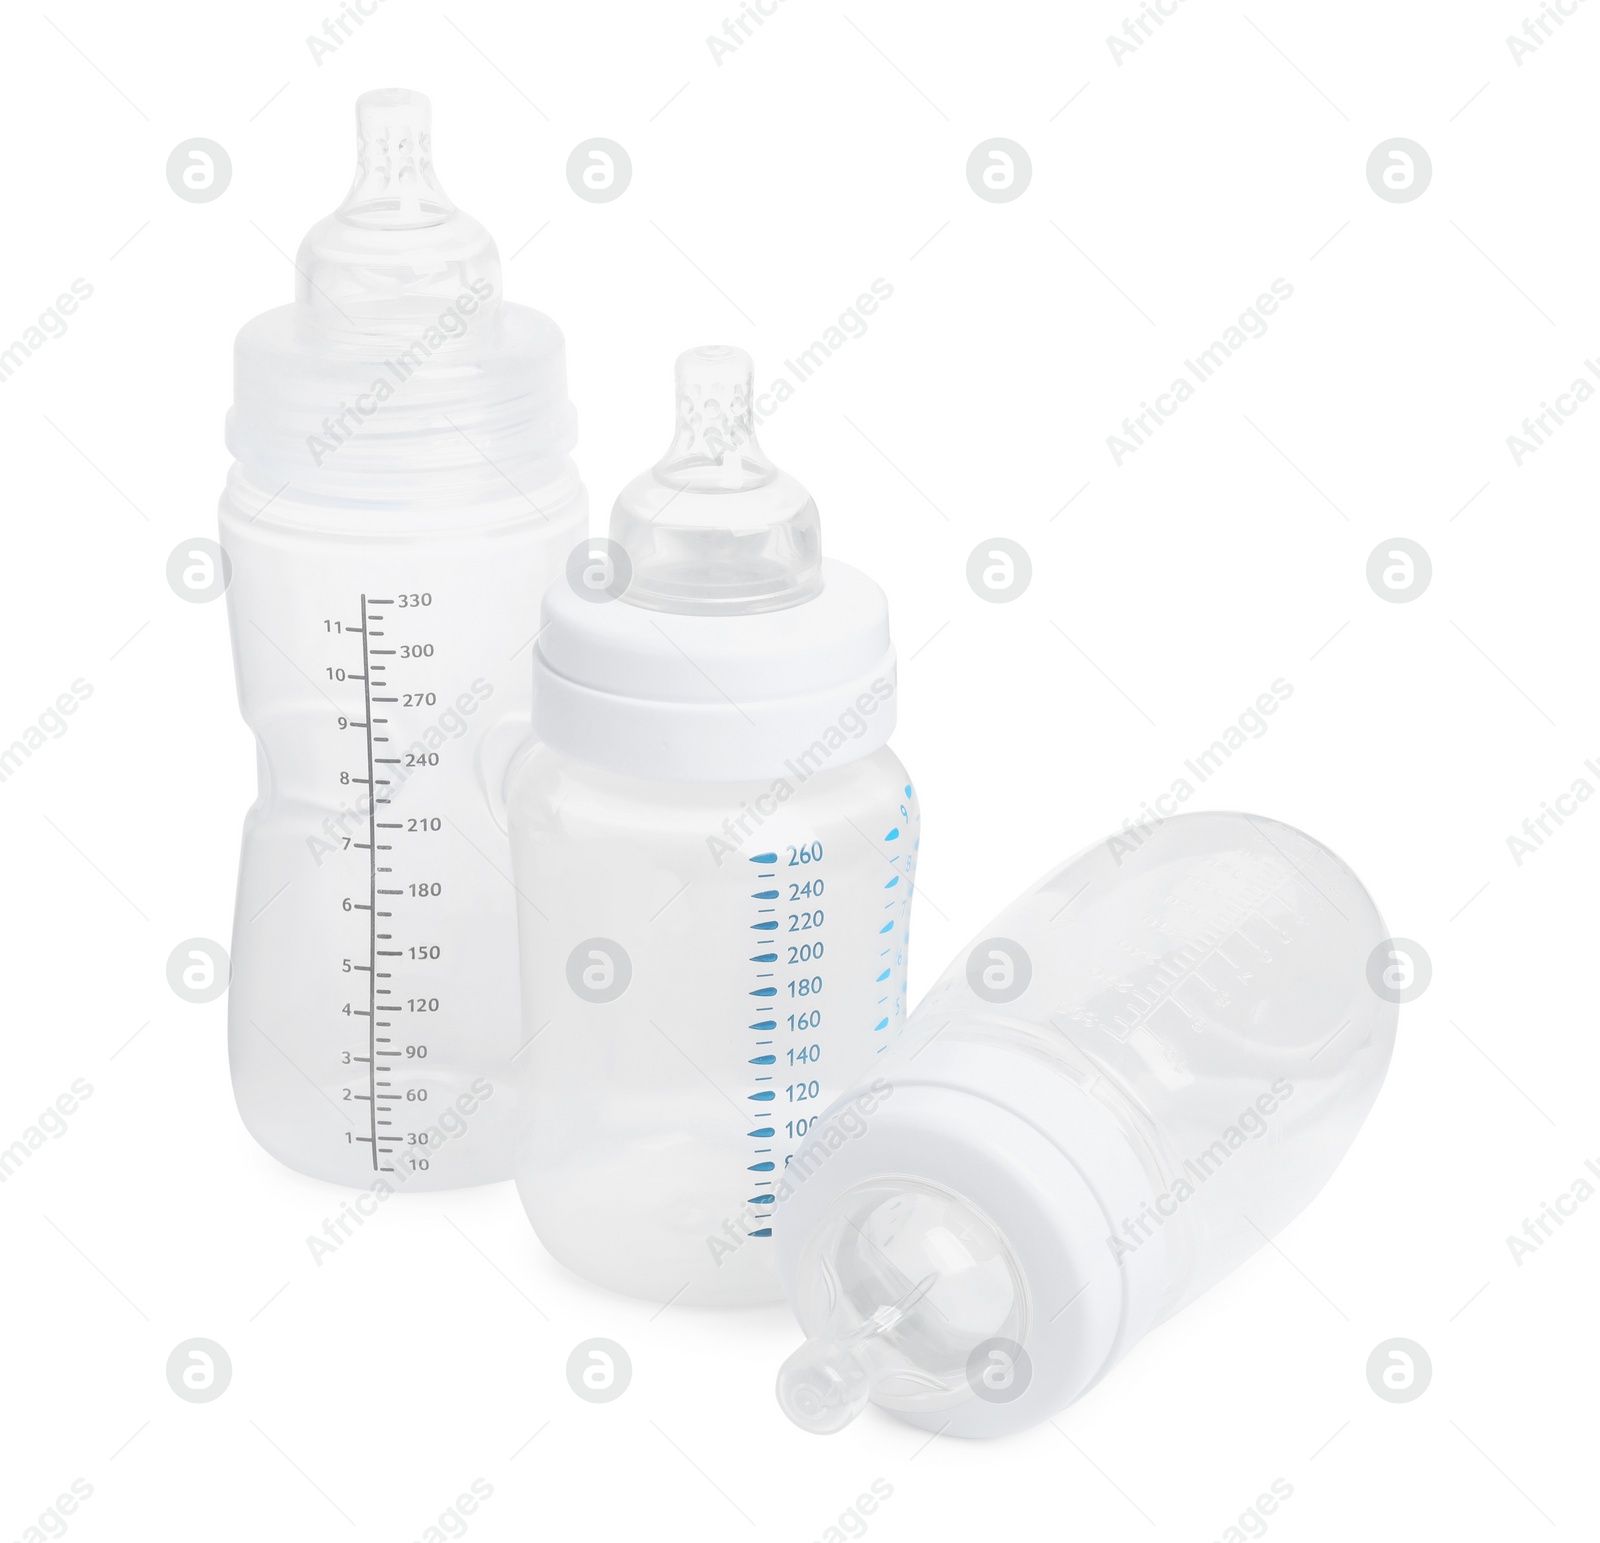 Photo of Three empty feeding bottles for infant formula on white background